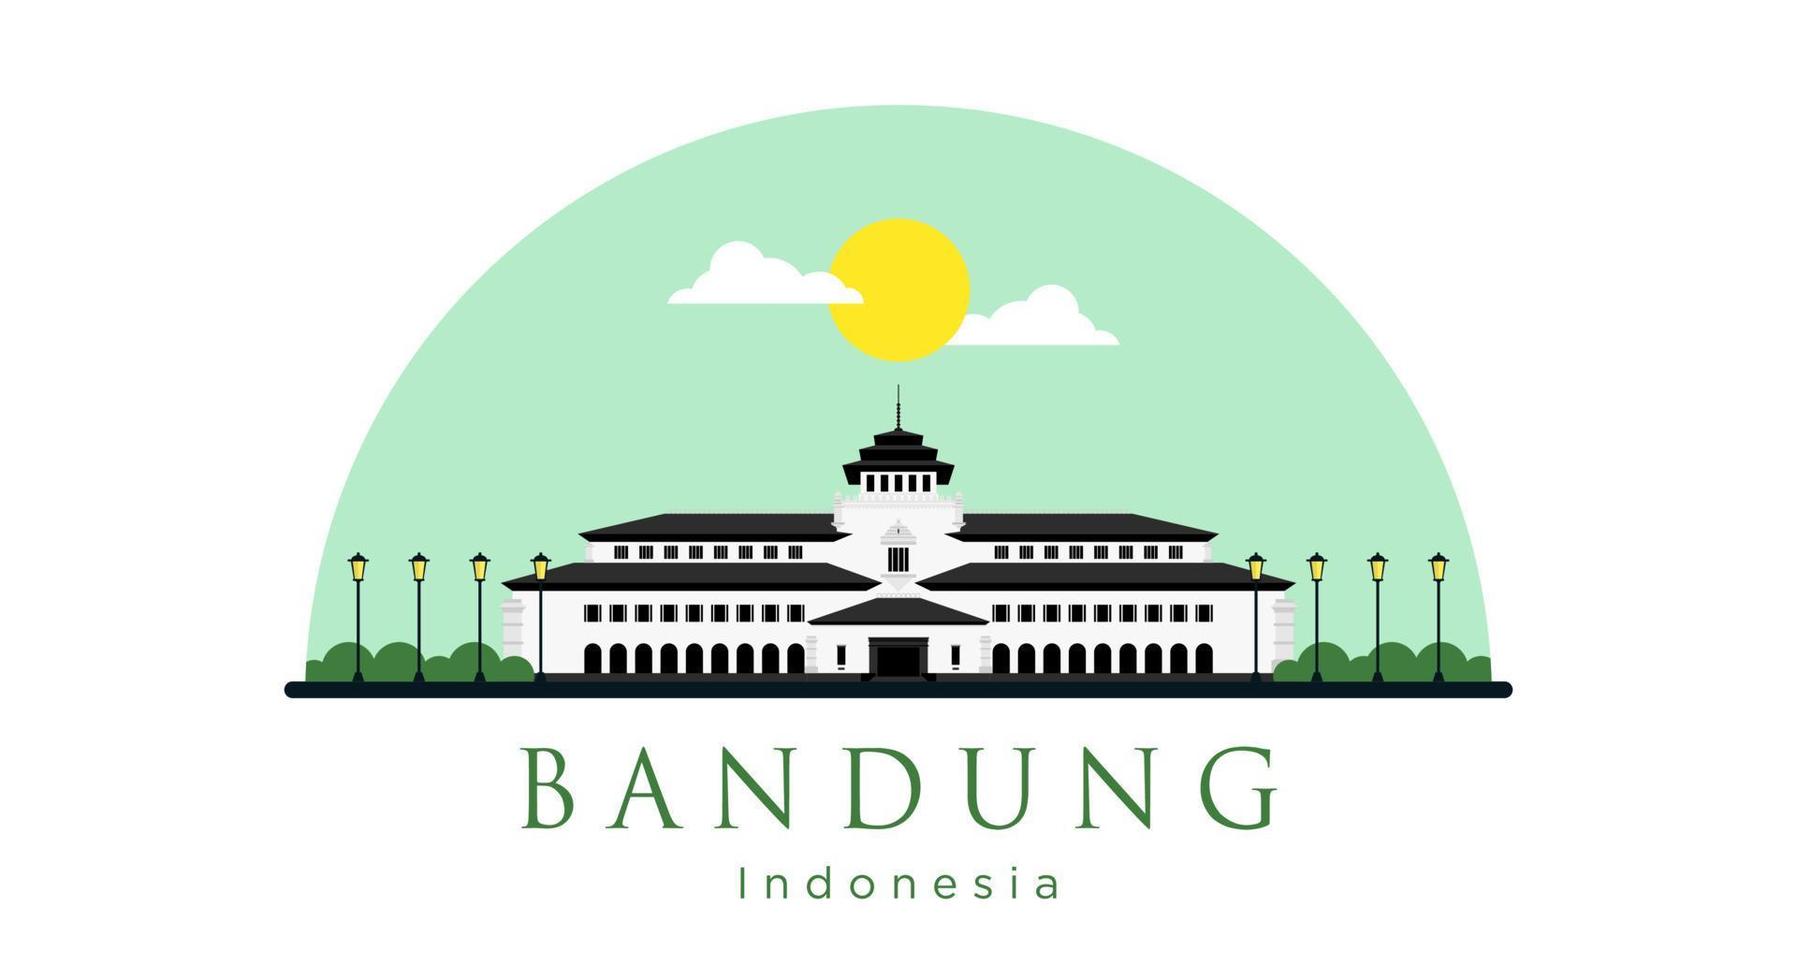 gedung sate illustrazione vettoriale in stile piatto l'icona di bandung, java occidentale, indonesia